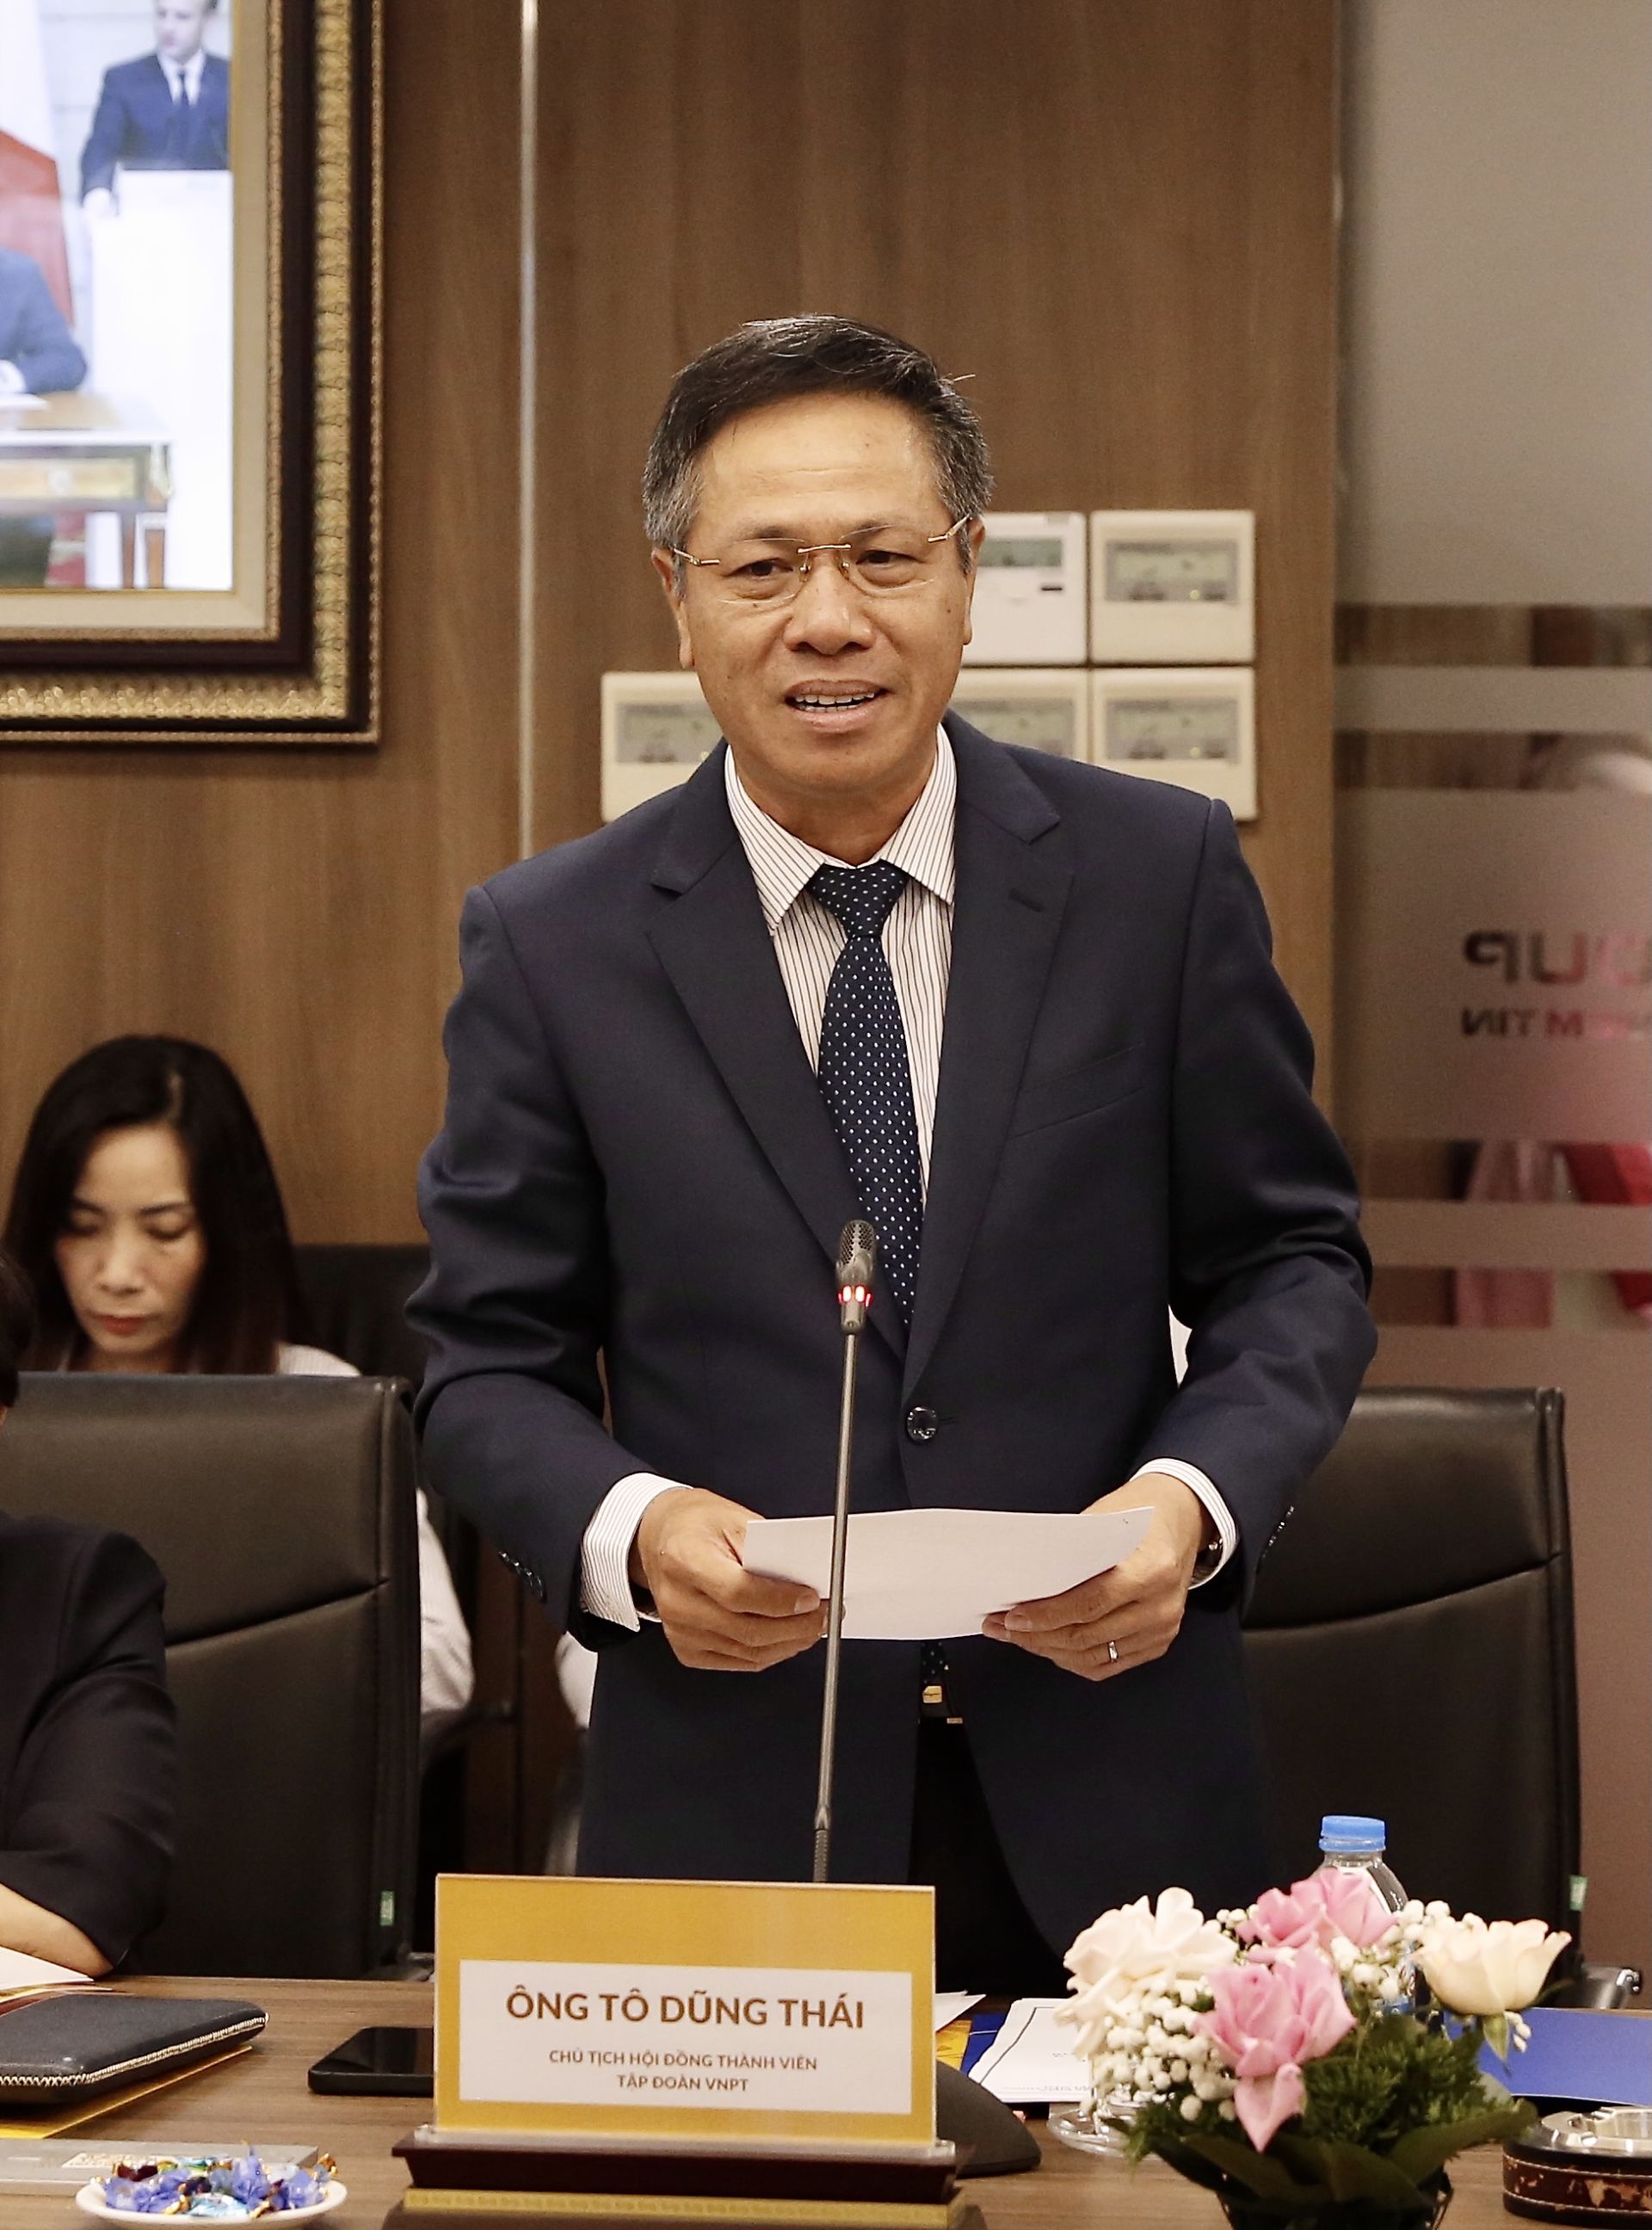 Ông Tô Dũng Thái, Chủ tịch HĐTV Tập đoàn VNPT phát biểu tại sự kiện.